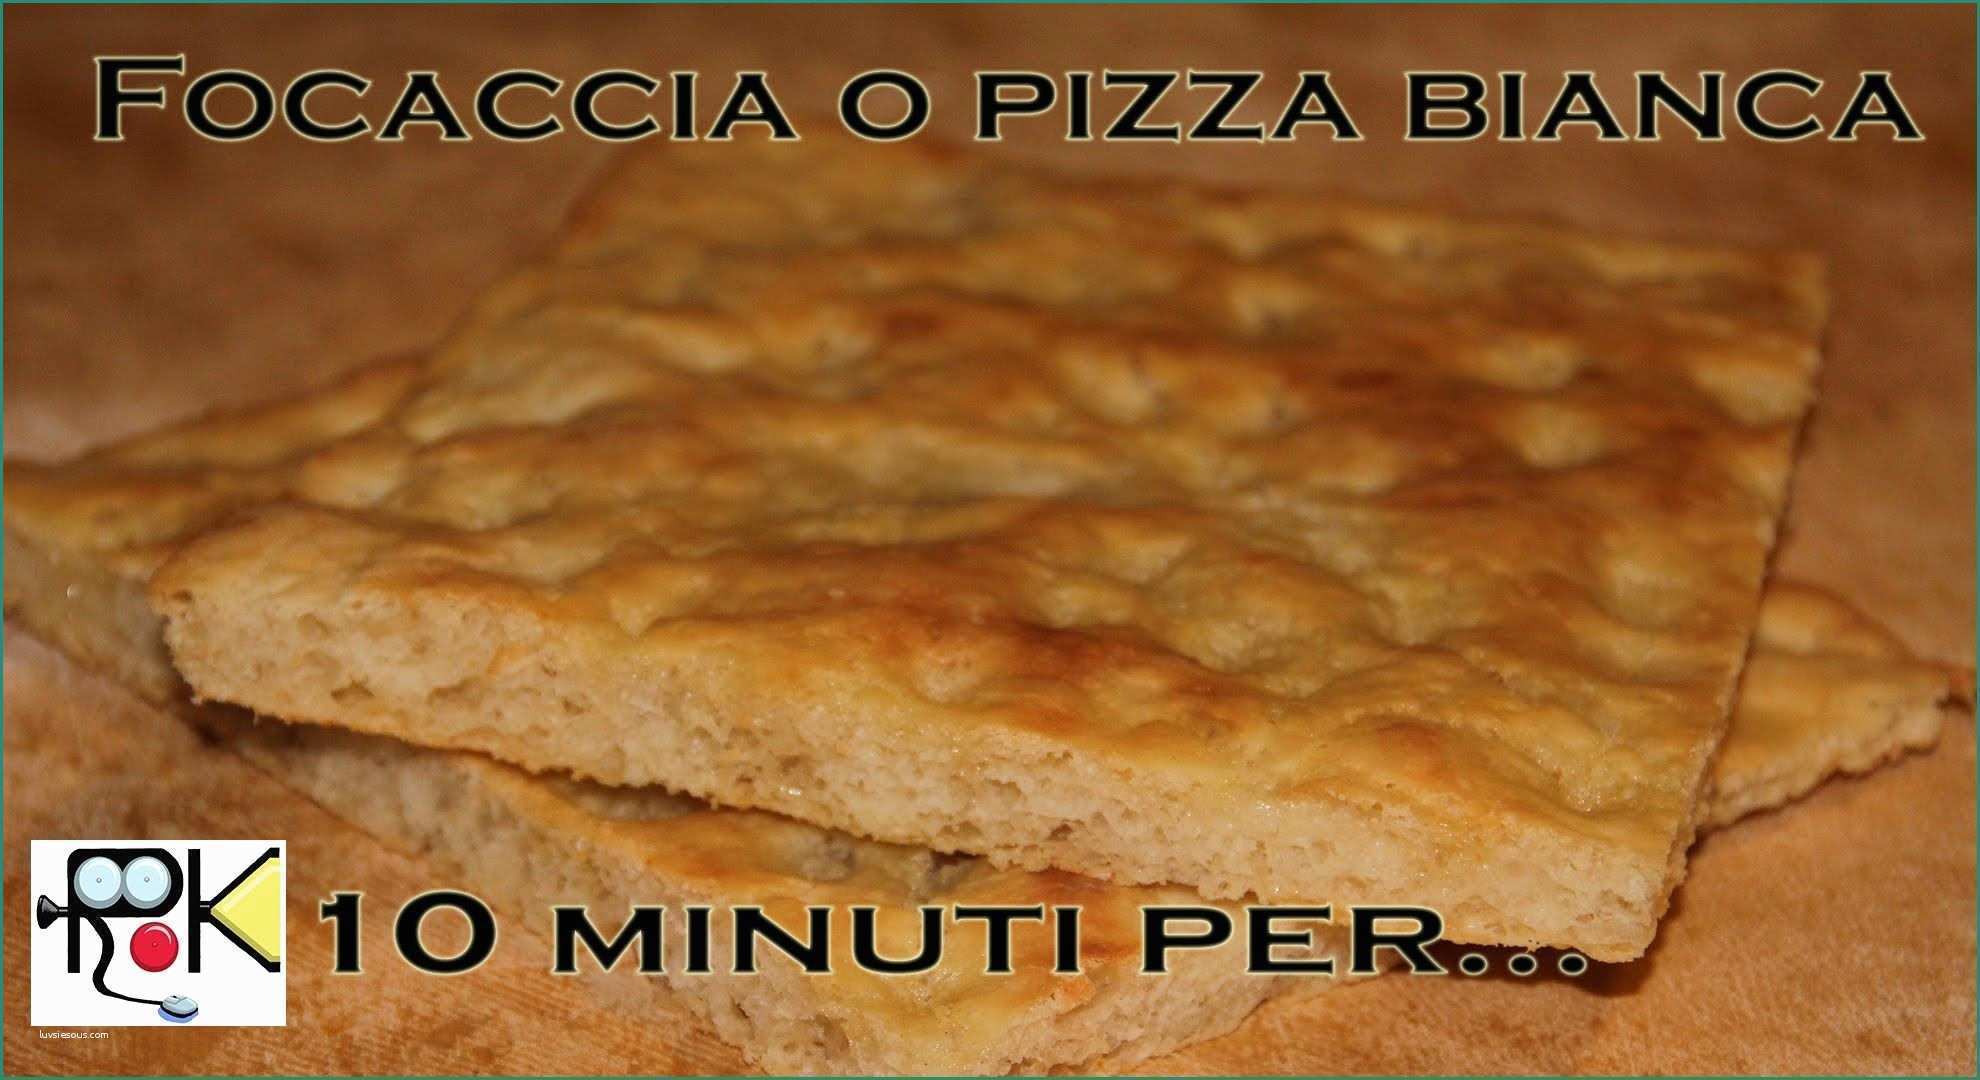 Nutella Bimby Tm E 10 Minuti Per Preparare Focaccia O Pizza Bianca Ricette Bimby